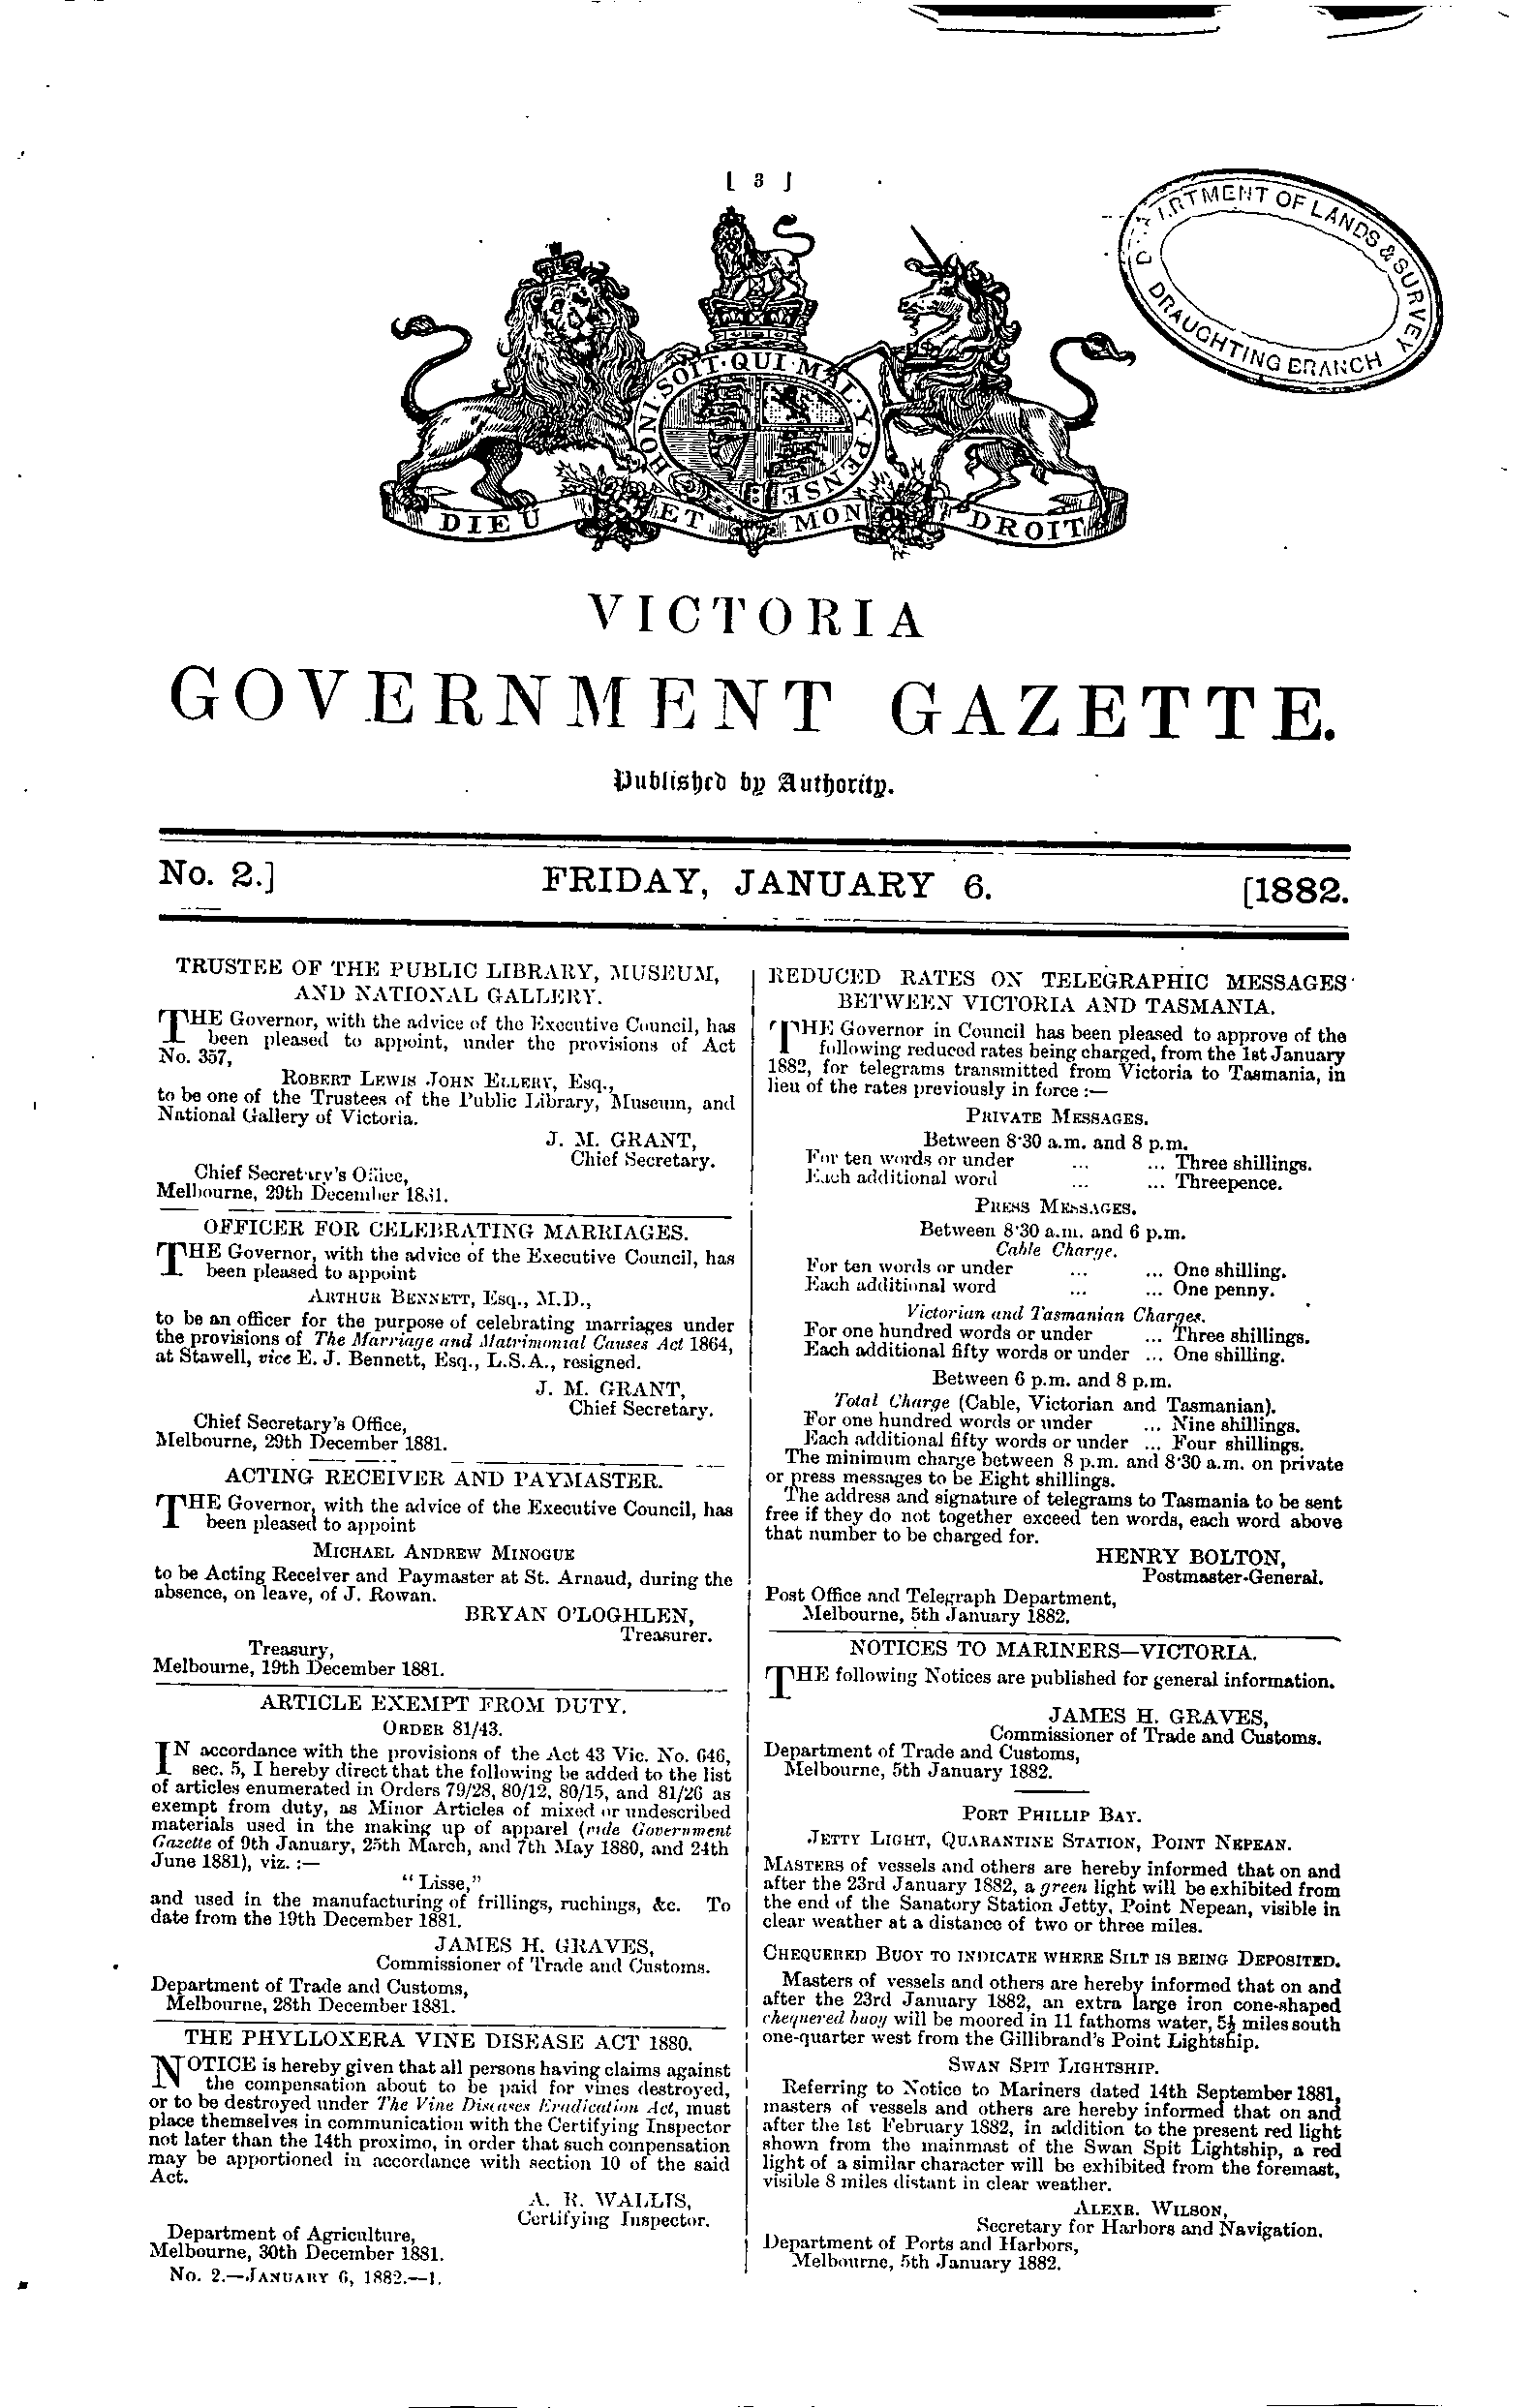 Victoria Government Gazette Online Archive 1882 P3